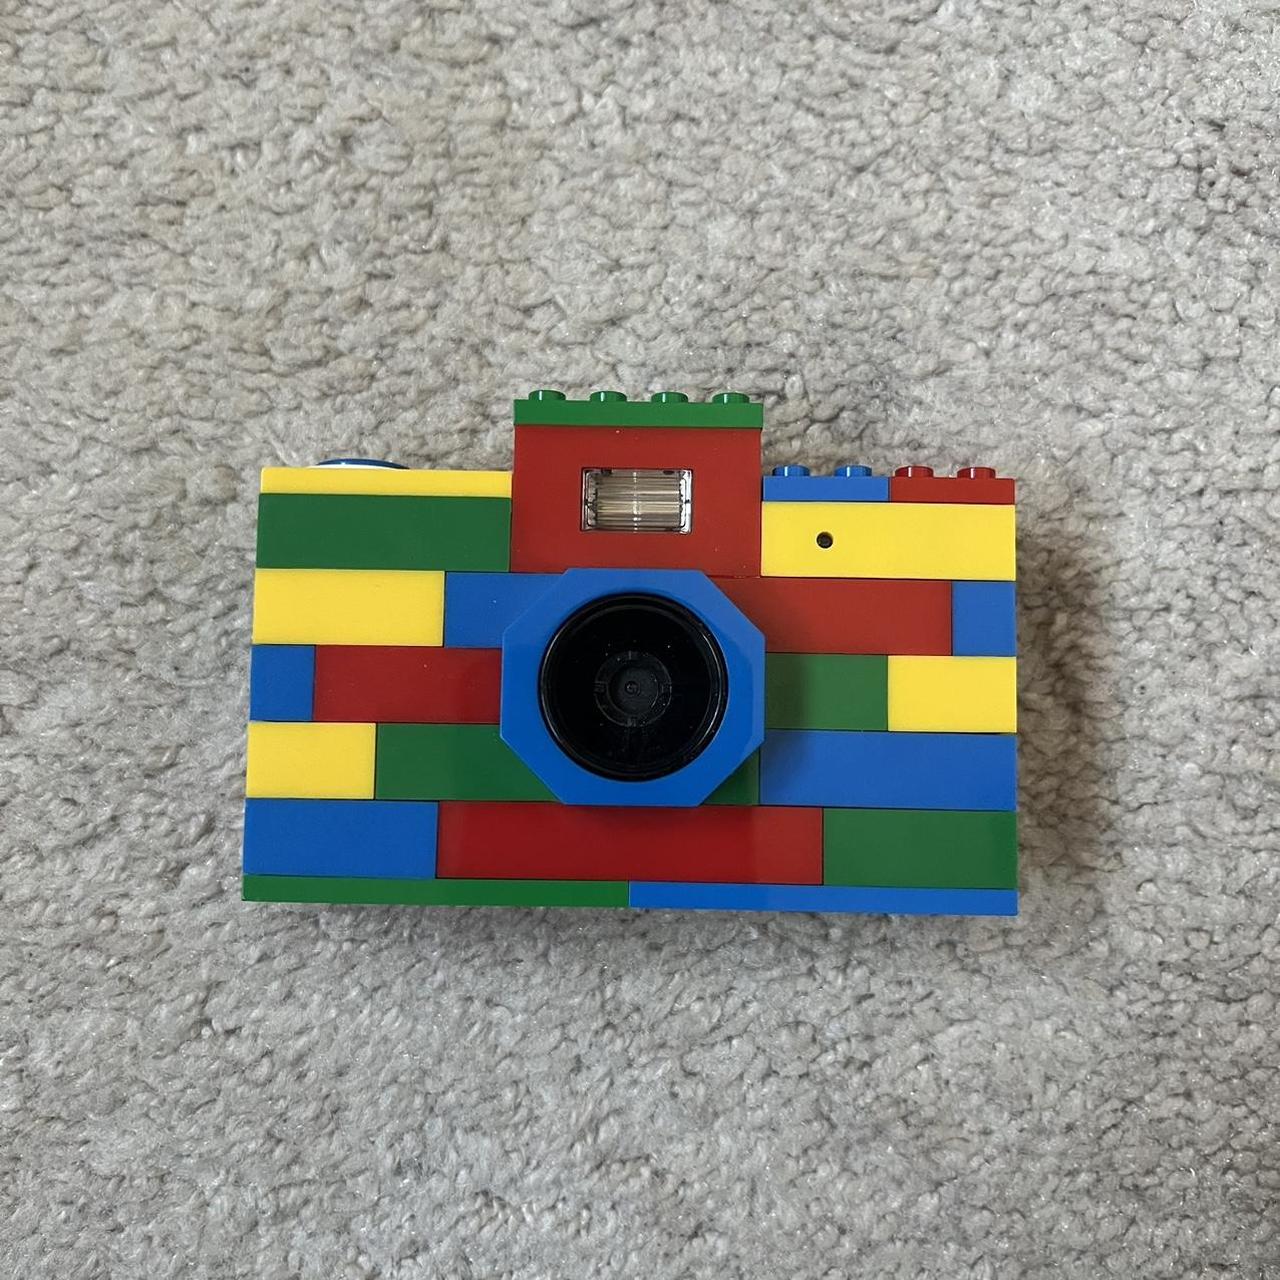 Digital LEGO Cameras : Digital LEGO Cameras